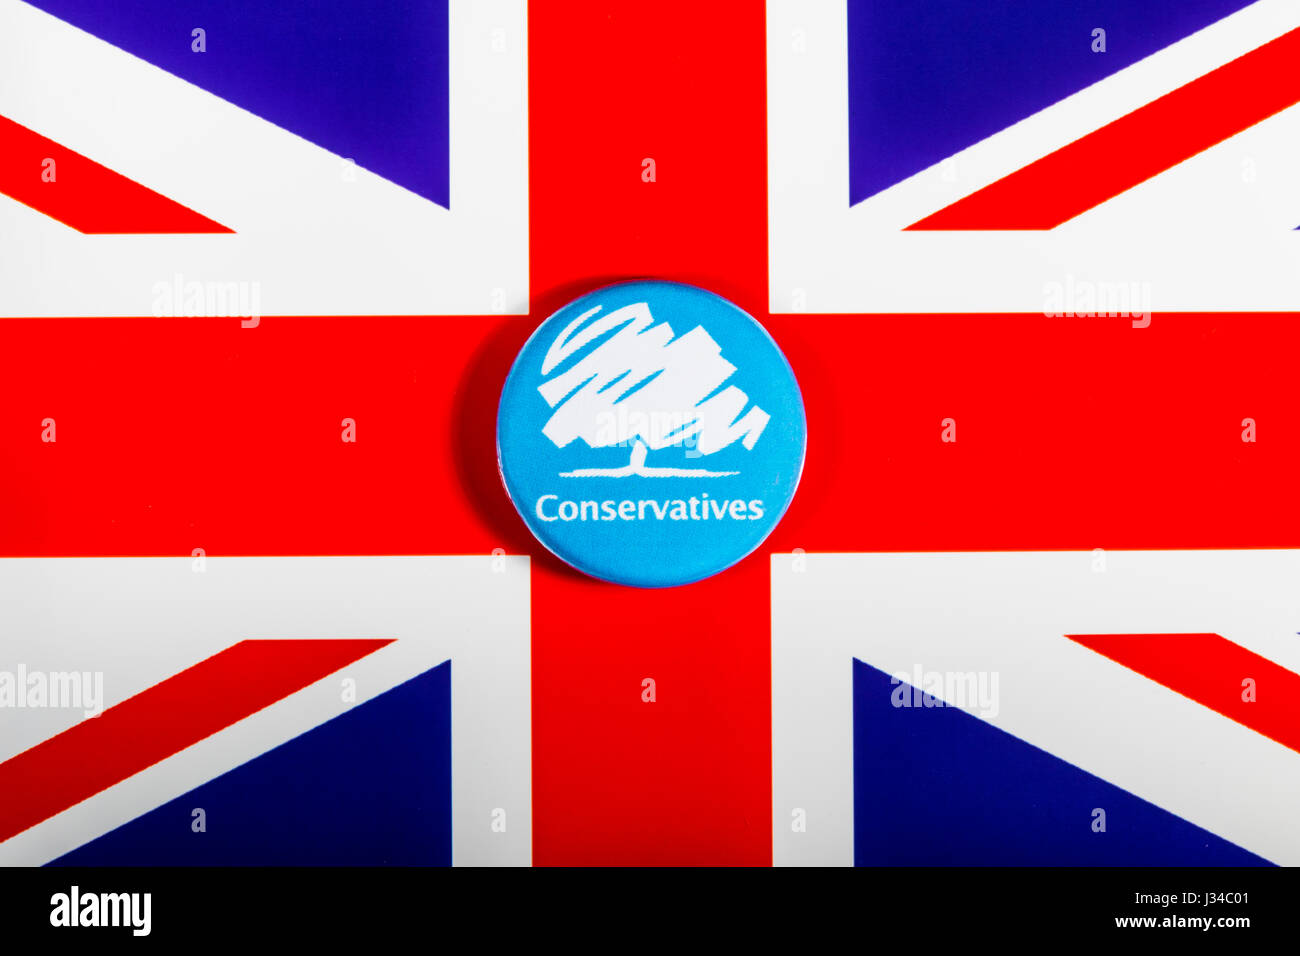 LONDON, UK - 2. Mai 2017: A Conservative Party Pin Abzeichen über die britische Flagge am 2. Mai 2017. Stockfoto